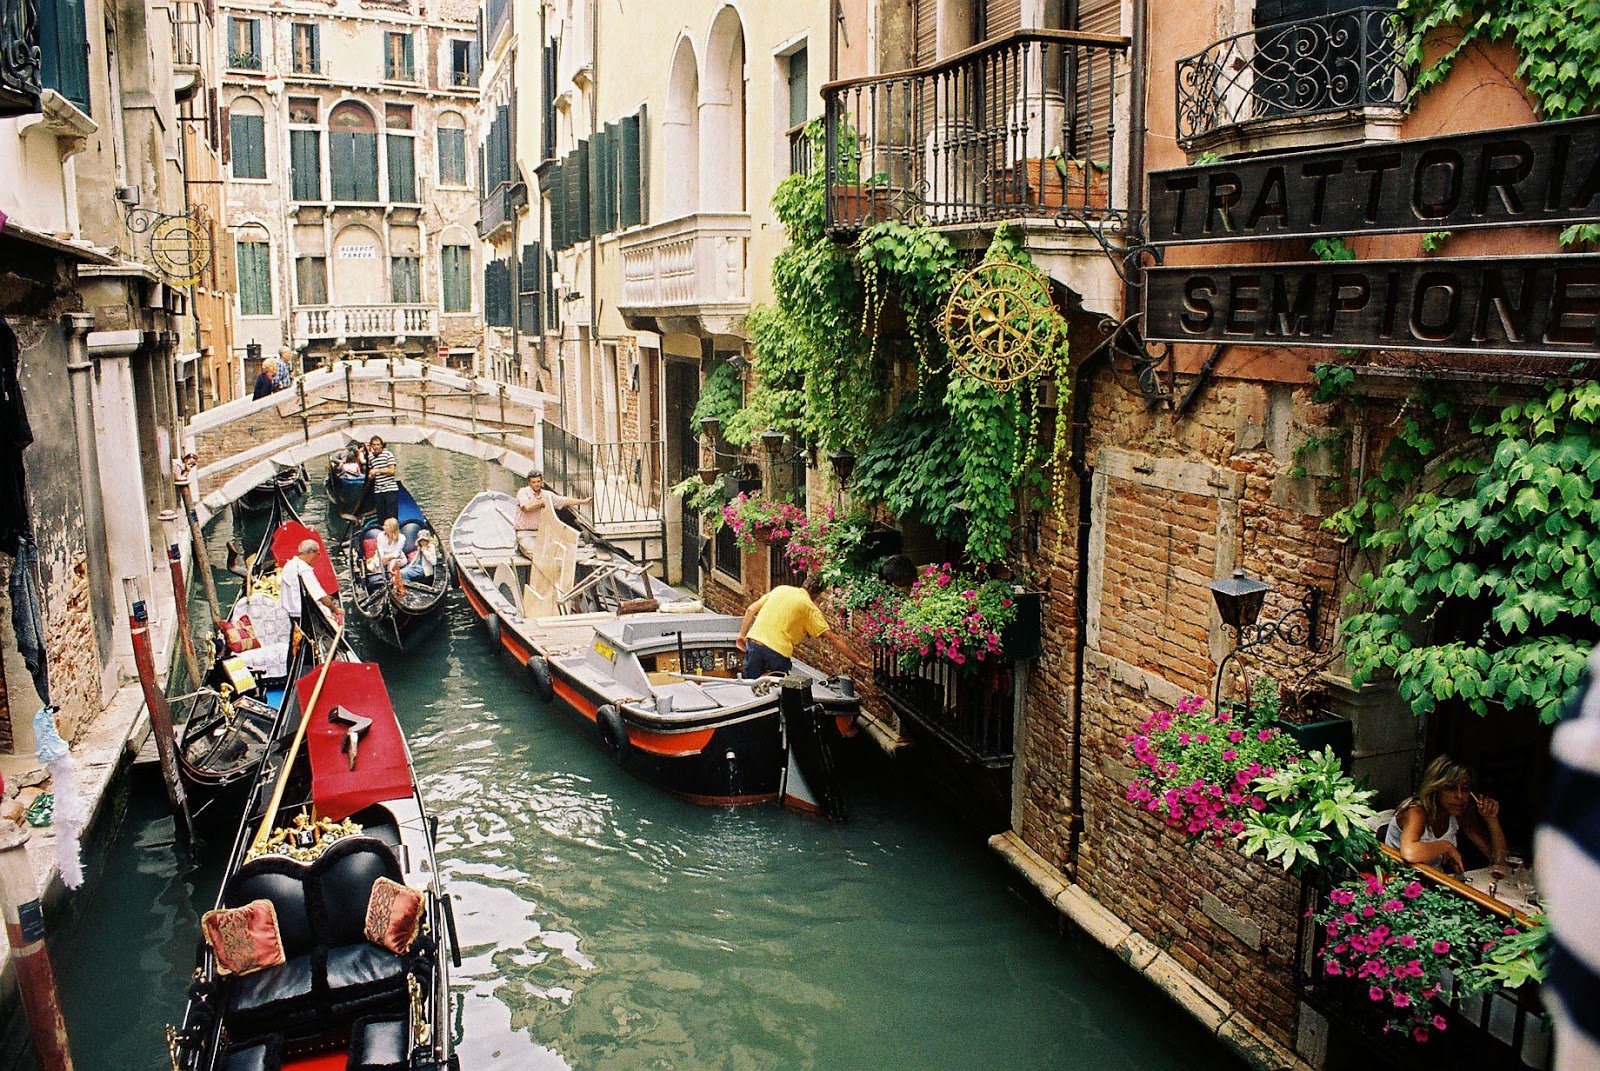 Как выглядела венеция в xviii веке: город каналов и гондол глазами мастера городских пейзажей каналетто